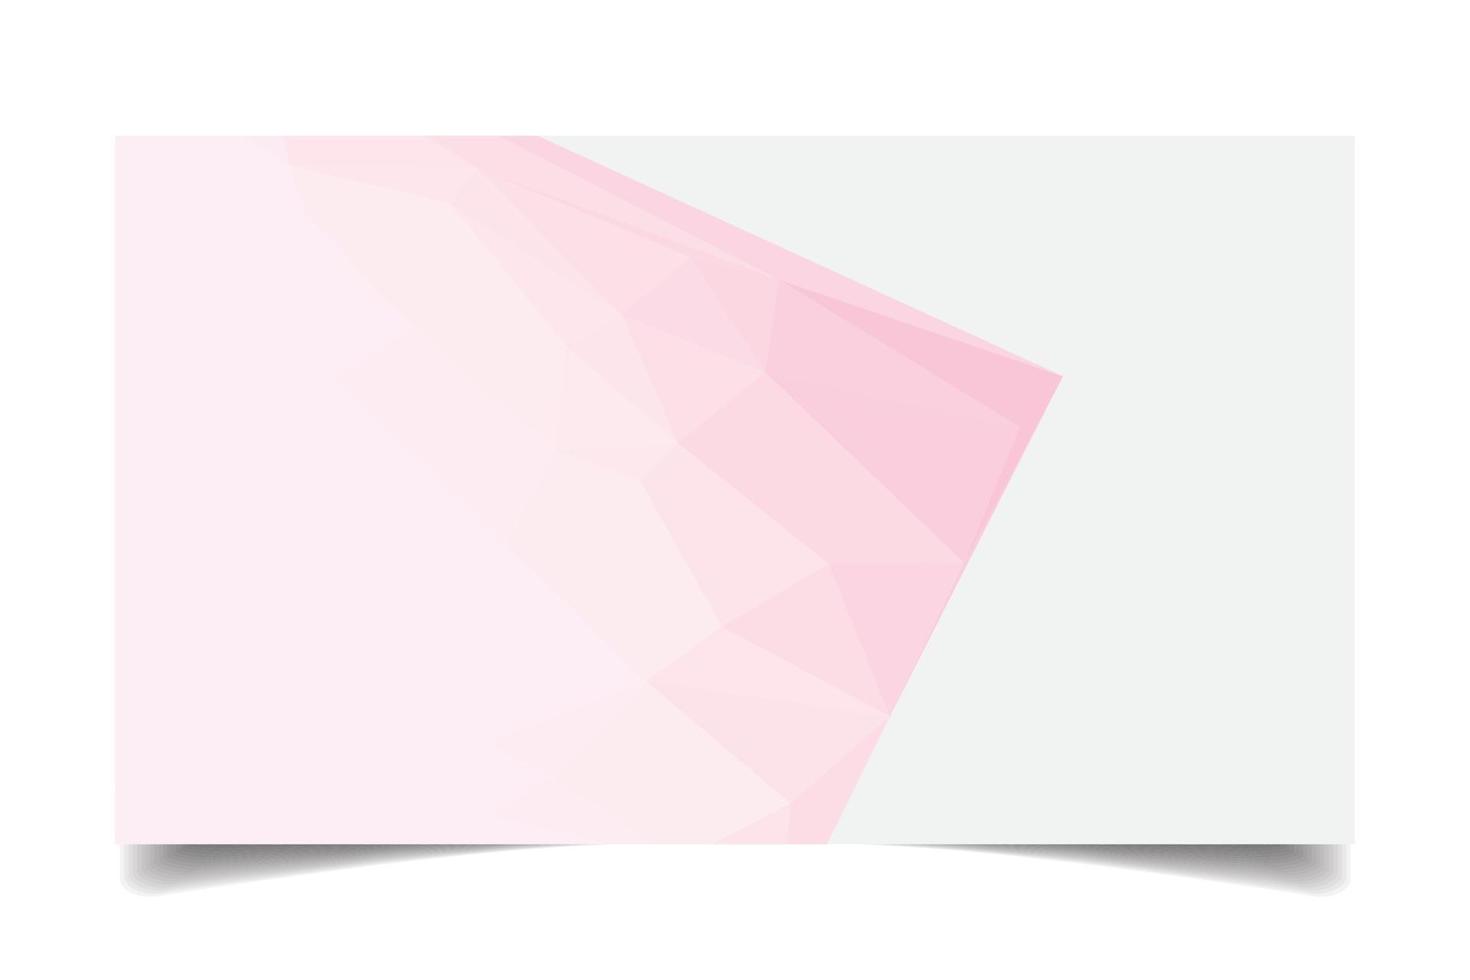 rosa Farbe triangulierter Hintergrundtexturvektor für Visitenkartenvorlage vektor